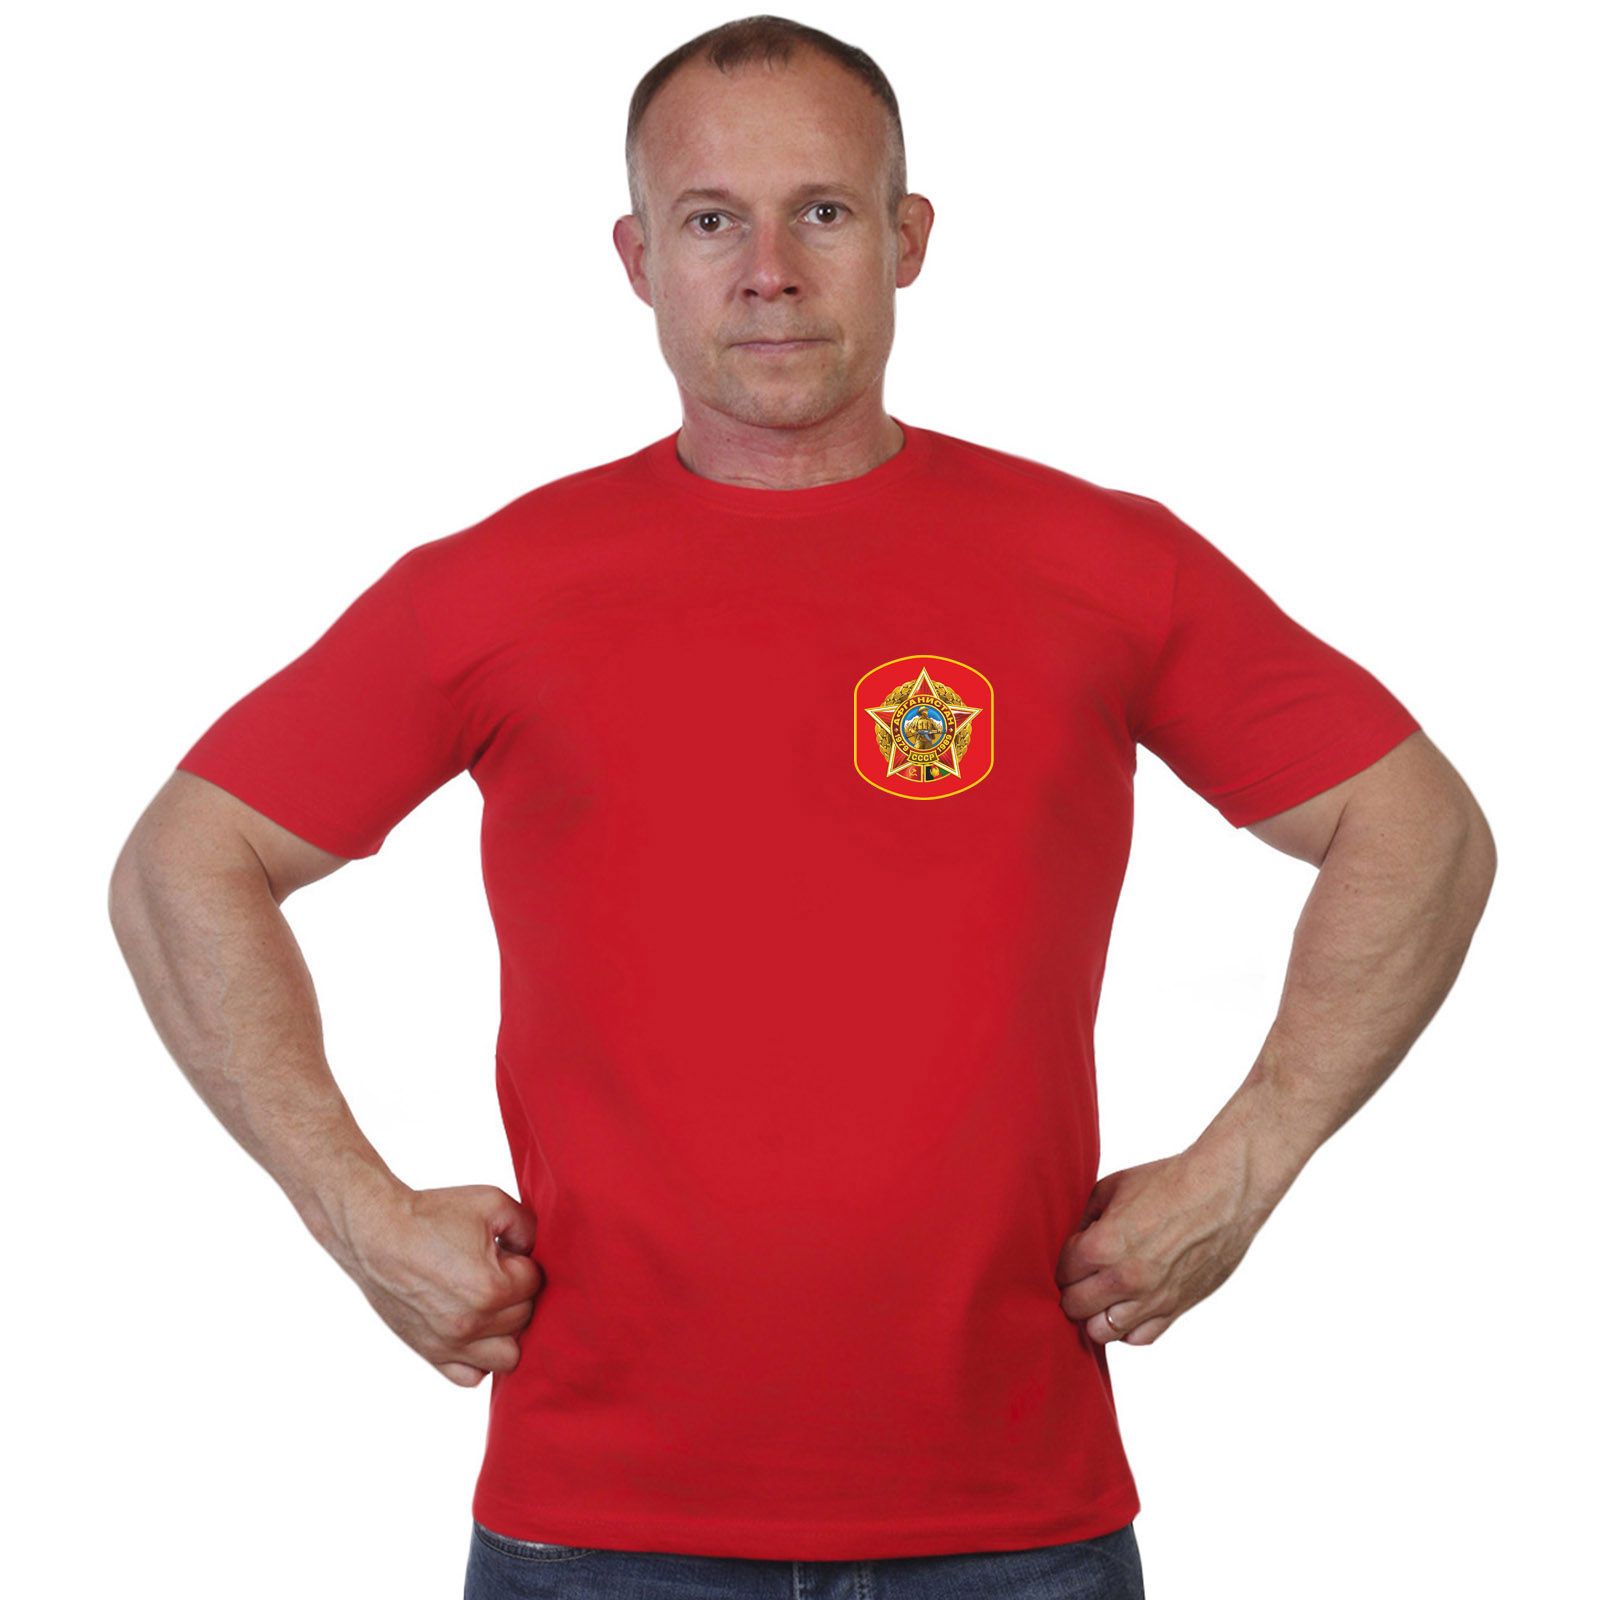 Красная футболка с термотрансфером "Афганистан 1979-1989" 